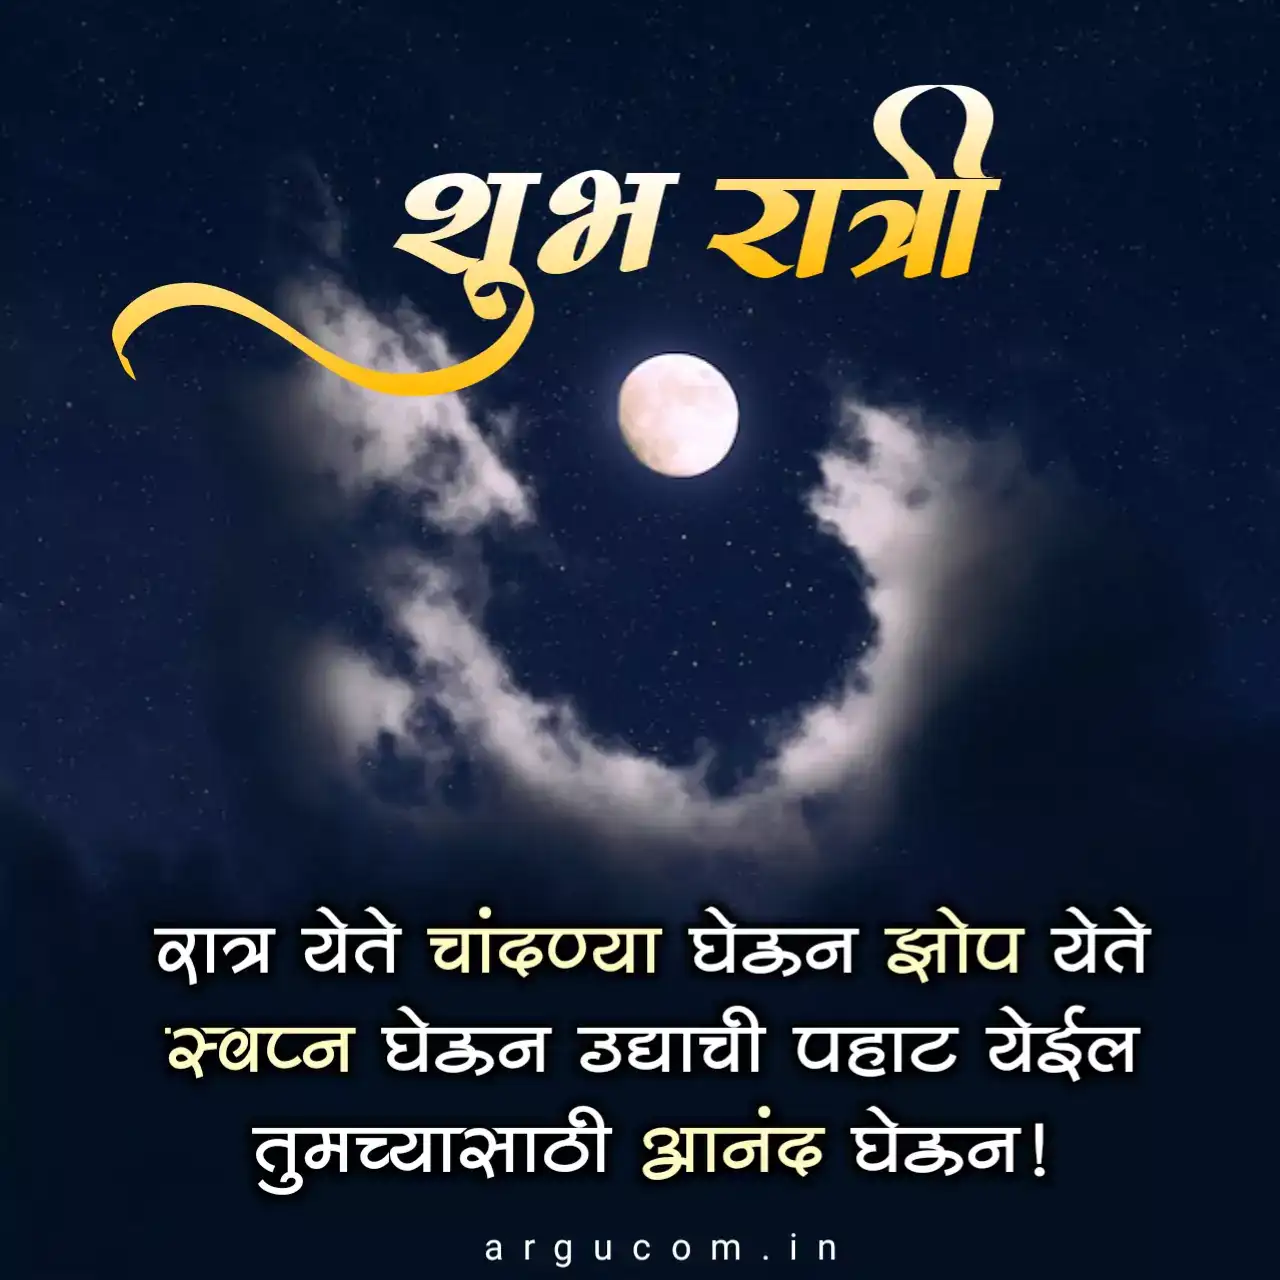 Good night quotes in marathi